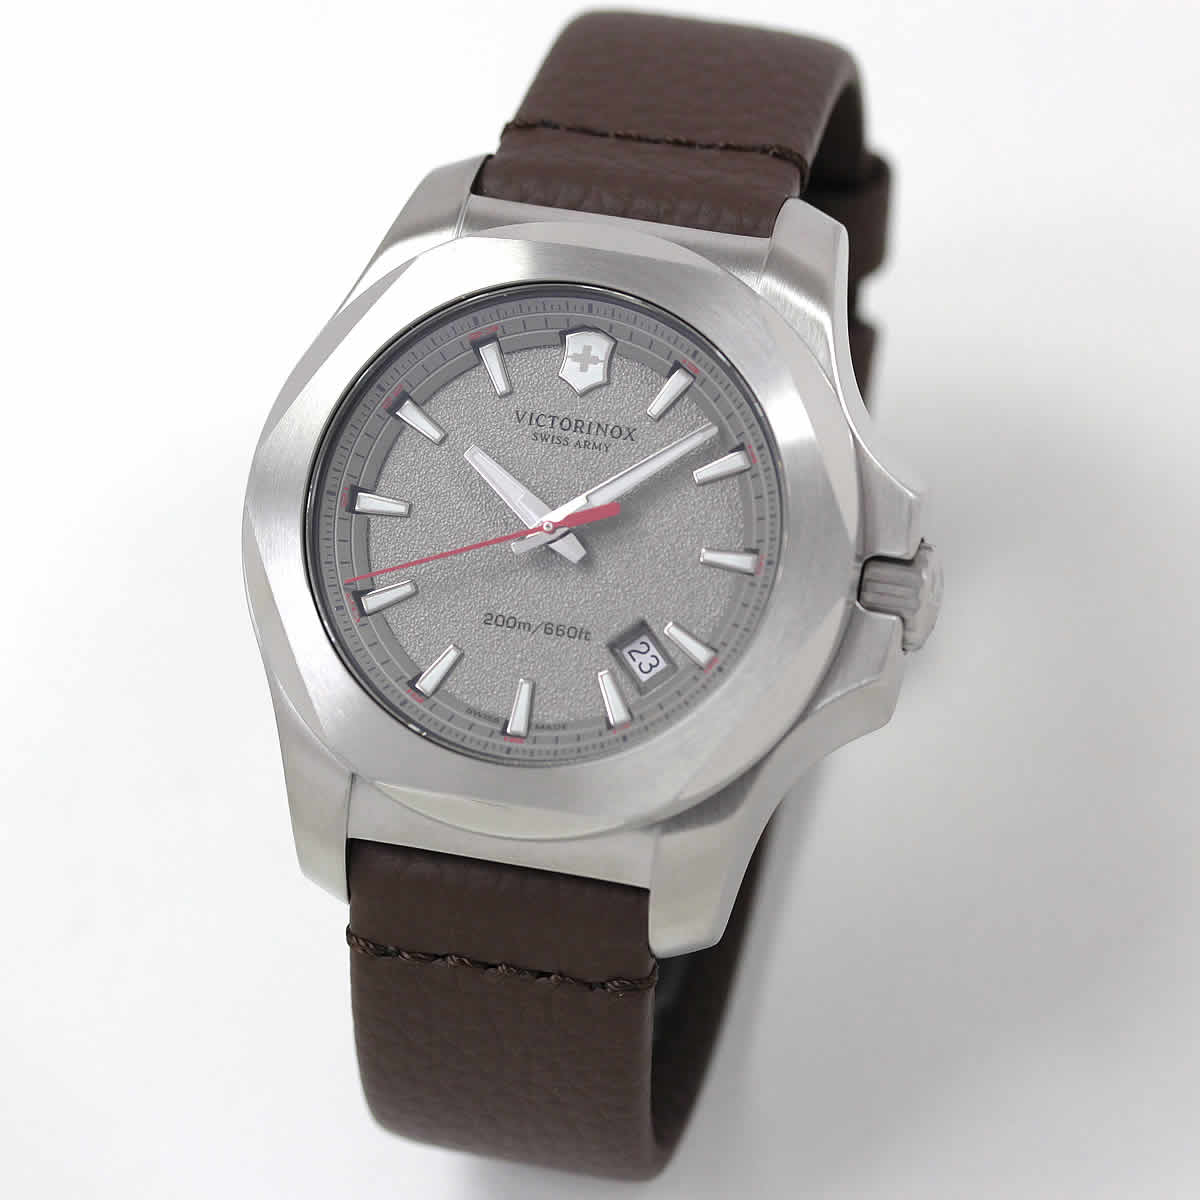 VICTORINOX（ビクトリノックス スイスアーミー）腕時計一覧 正美堂時計店 腕時計ブランド一覧ページ/通販/正美堂時計店